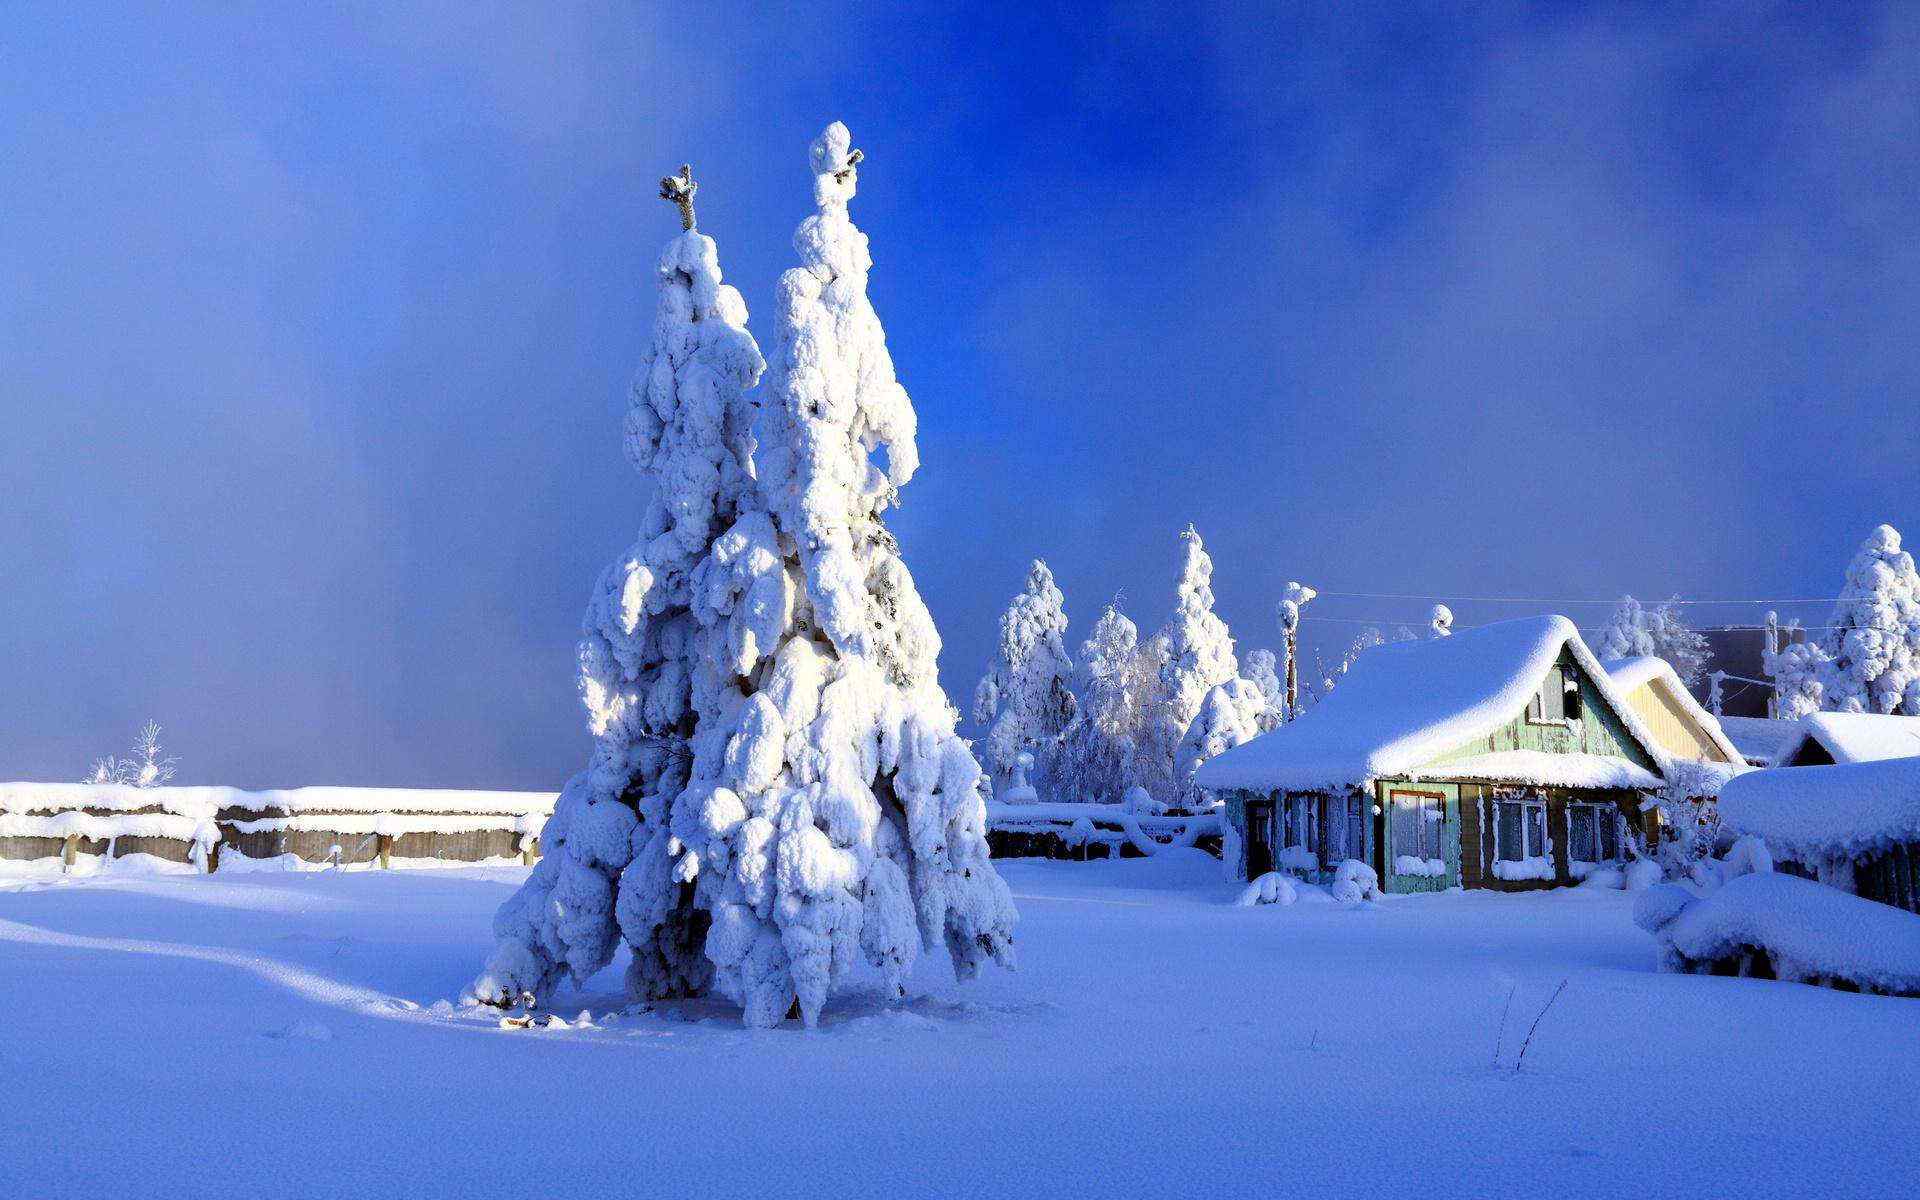 雪中小木屋风景壁纸